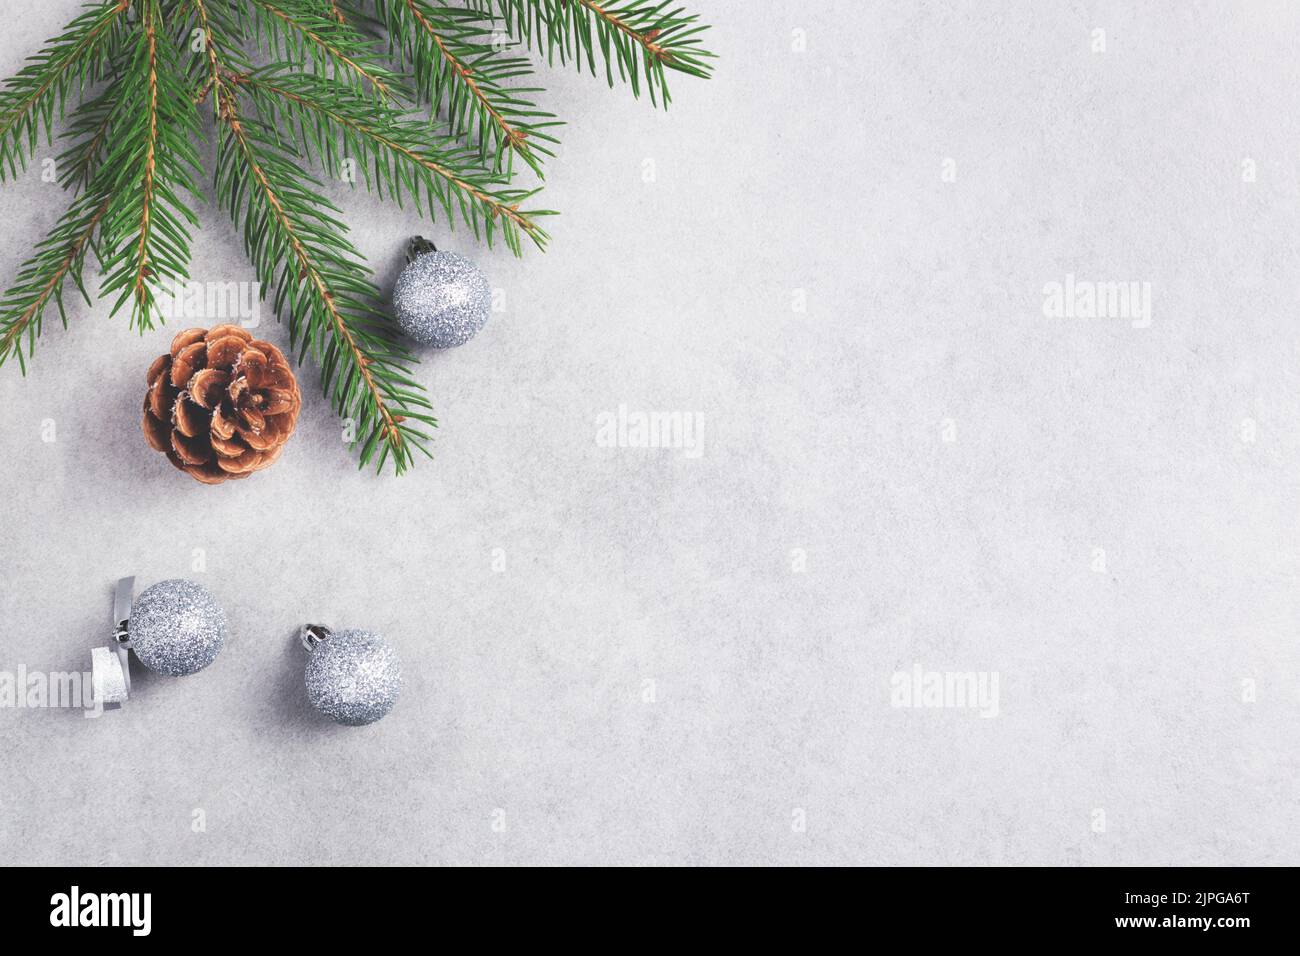 Hình ảnh Noel: Dù là những bức tranh vẽ tay đáng yêu hay là những bức ảnh kết hợp giữa mùa đông và Giáng sinh, bạn đều sẽ yêu thích những hình ảnh Noel tuyệt đẹp này.